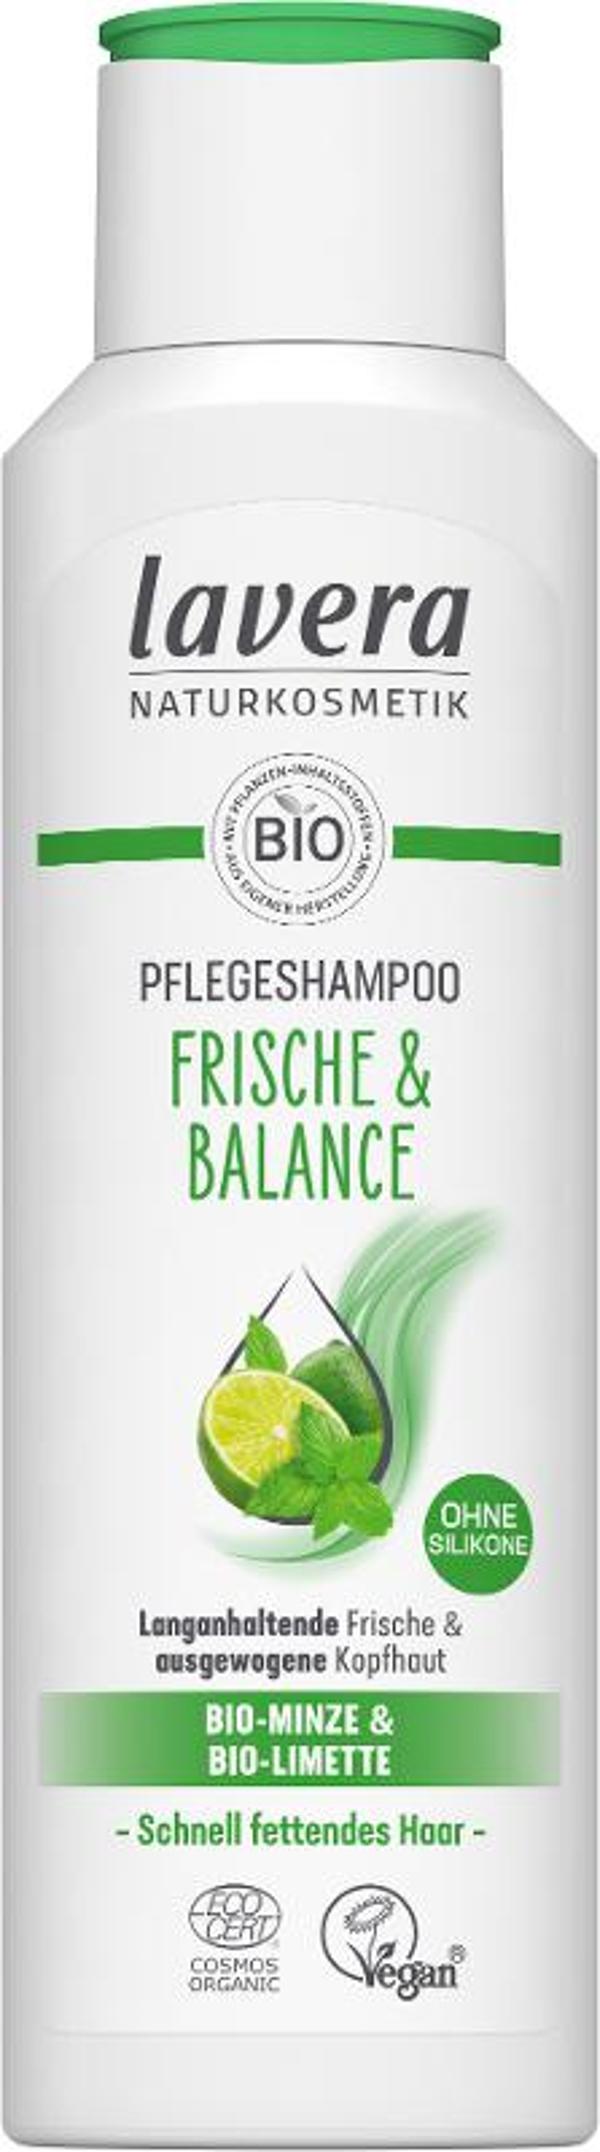 Produktfoto zu Shampoo Frische & Balance